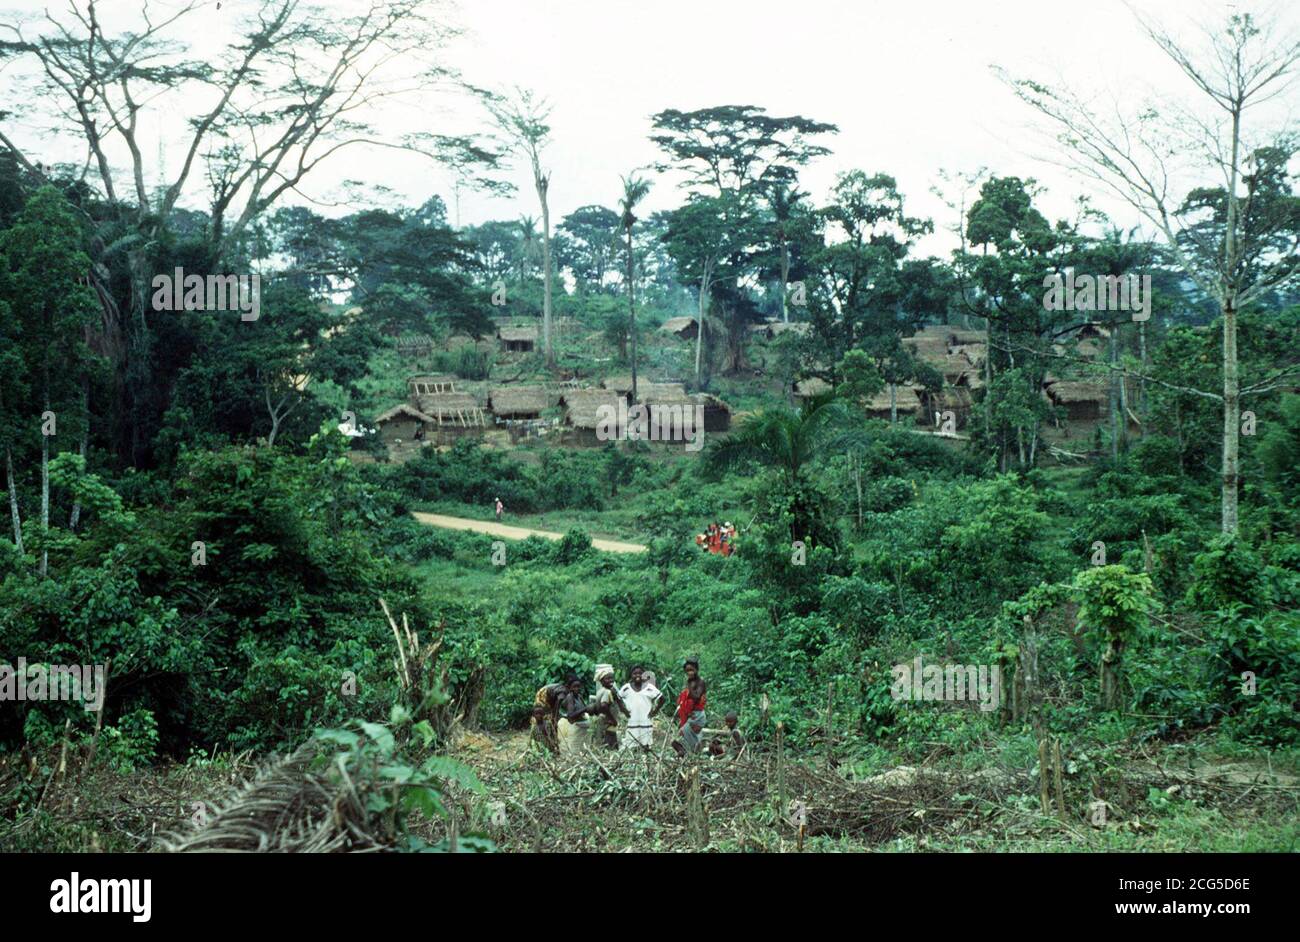 Una scena rurale in Liberia, Africa. I diplomatici cercavano di ottenere il rilascio di 4 operatori britannici che erano tra i 6 occidentali rapiti nello stato dell'Africa occidentale. Secondo quanto riferito, gli ostaggi sono stati sequestrati da uomini armati che sono entrati in un'agenzia di aiuti. * a Kolahun, nel nord-ovest del paese vicino ai suoi confini con la Sierra Leone e la Guinea, tra le 7:00 e le 8:00 di ieri. E' l'ultimo incidente di una serie di sequestri che hanno visto i britannici sequestrati in Sierra Leone e Nigeria. Tre dei britannici sono stati nominati come l'ostetrica Sara Nam, 30, da Carmarthen, in Galles, Dr Mike Roe, 33, da Foto Stock